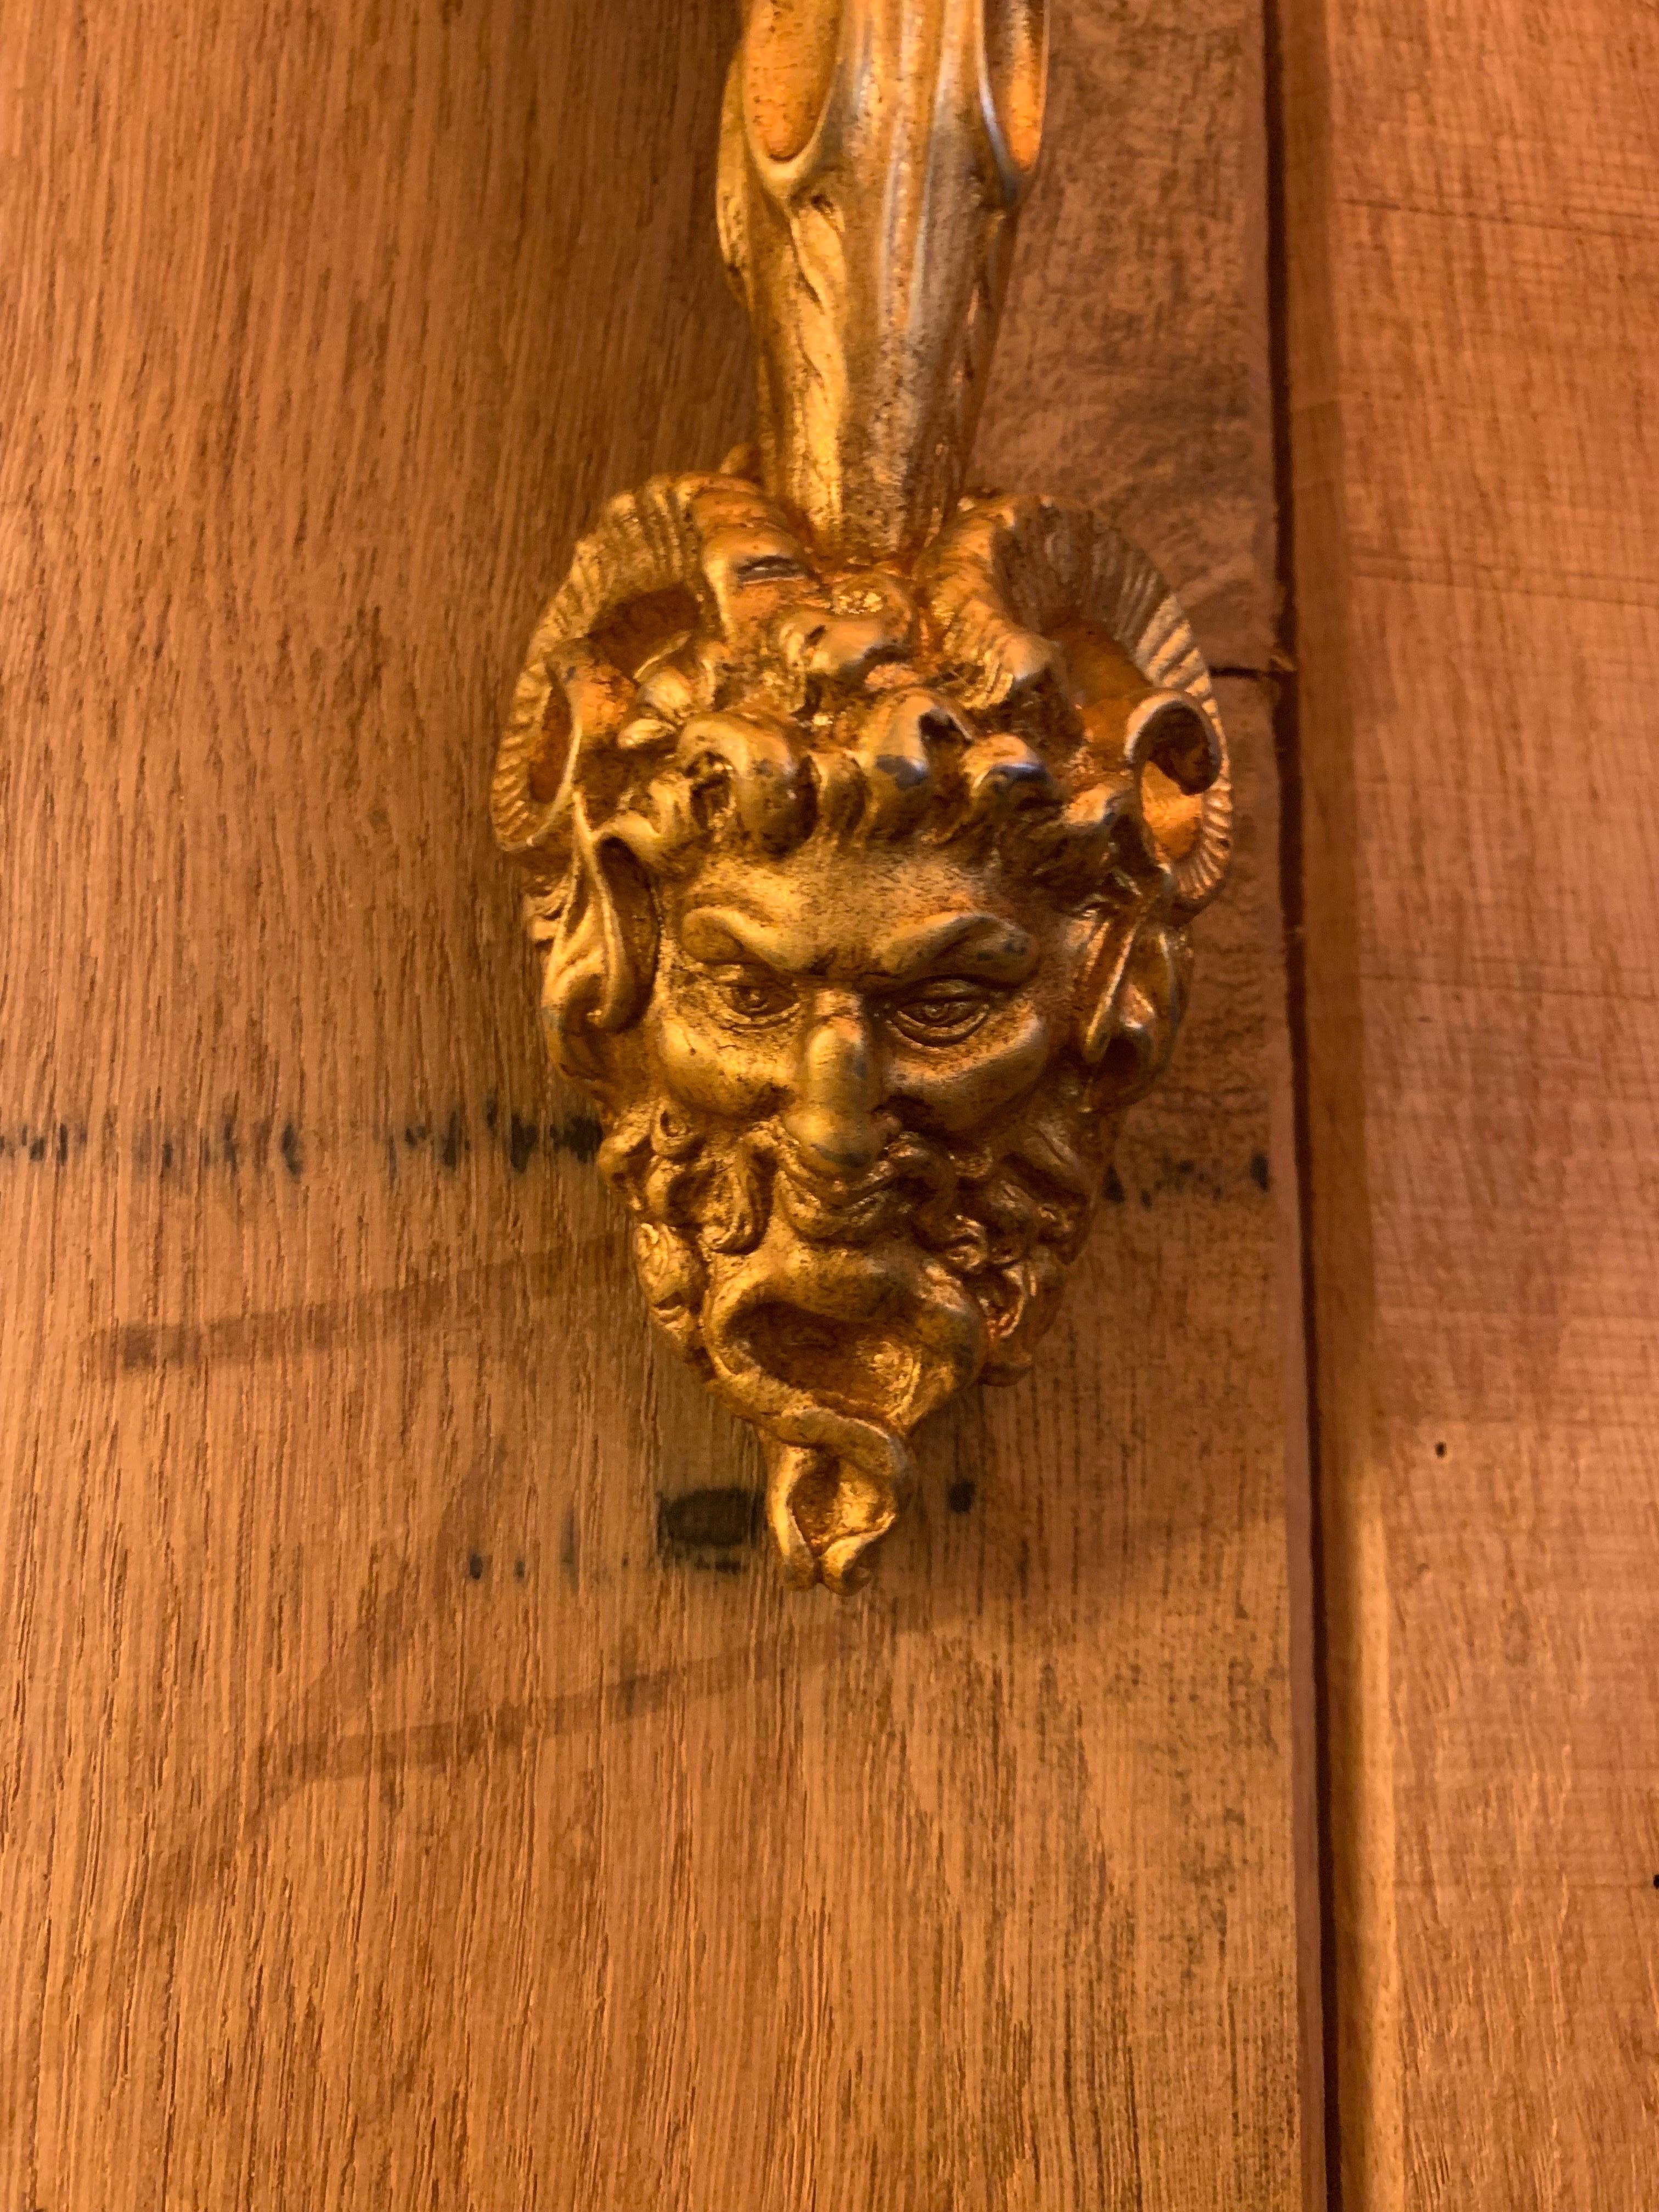 Splendid Paar Fackel in vergoldeter Bronze patiniert 24K. Die Wandhalterung ist ein Löwenkopf, der in ein um die Fackel gewickeltes Seil beißt.

Wir haben ein Paar auf Lager, können sie aber auch nach Maß und in anderen Ausführungen wie 18 Karat